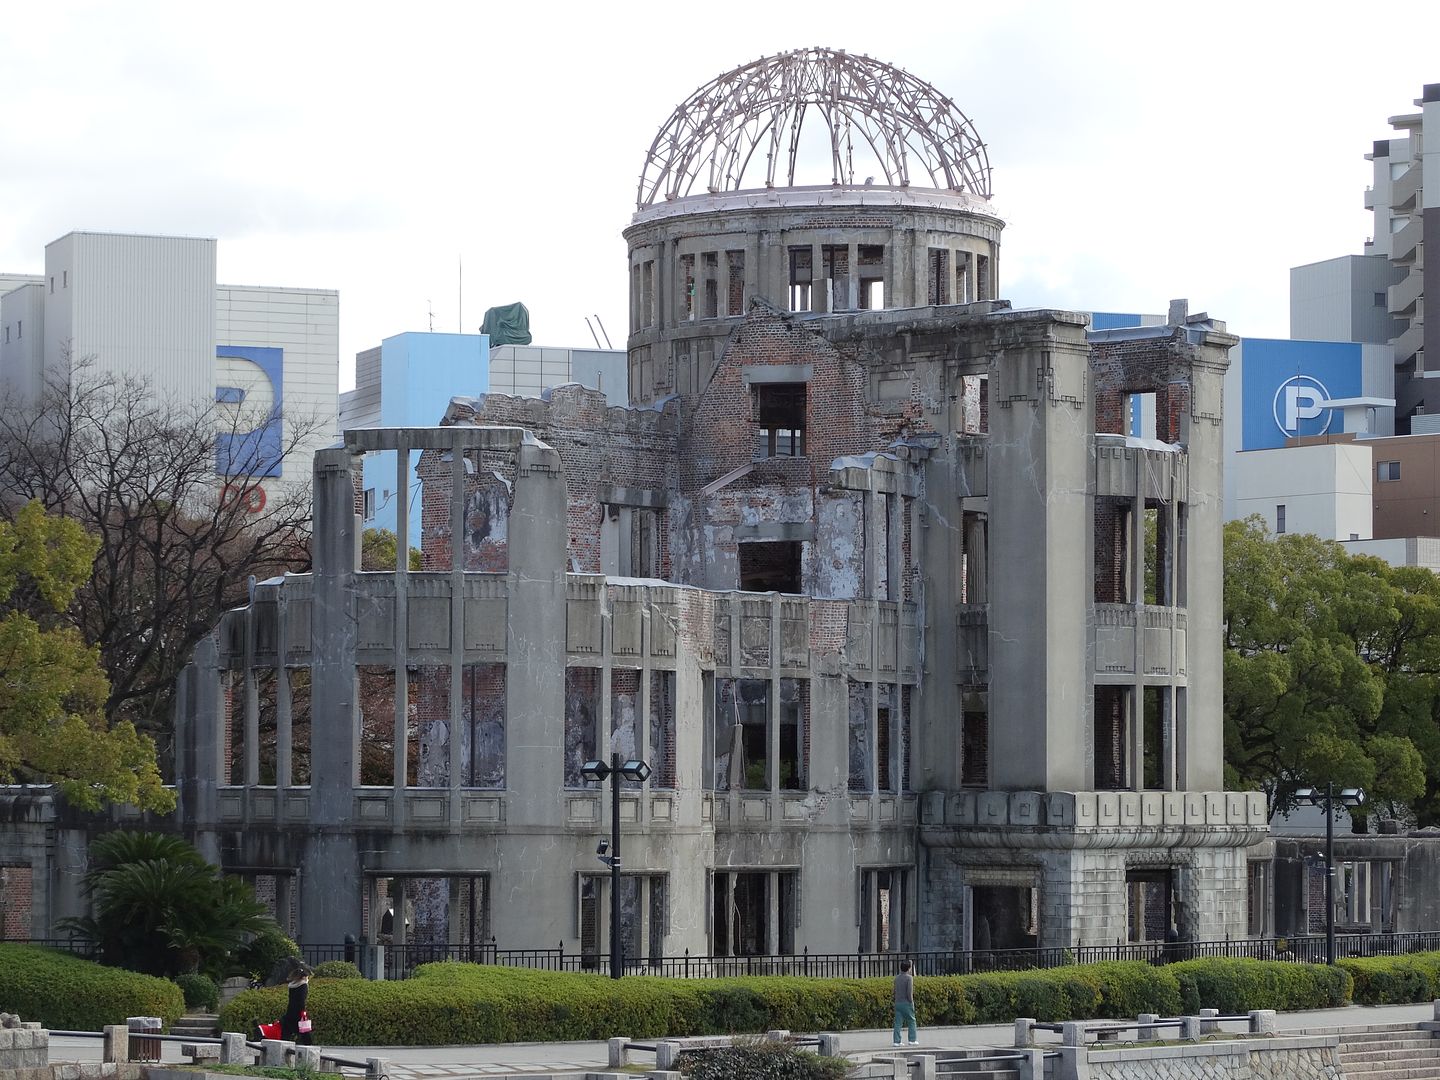 Hiroshima Dome in Japan photo 2013-12-24DSC00626_zps4f20887b.jpg